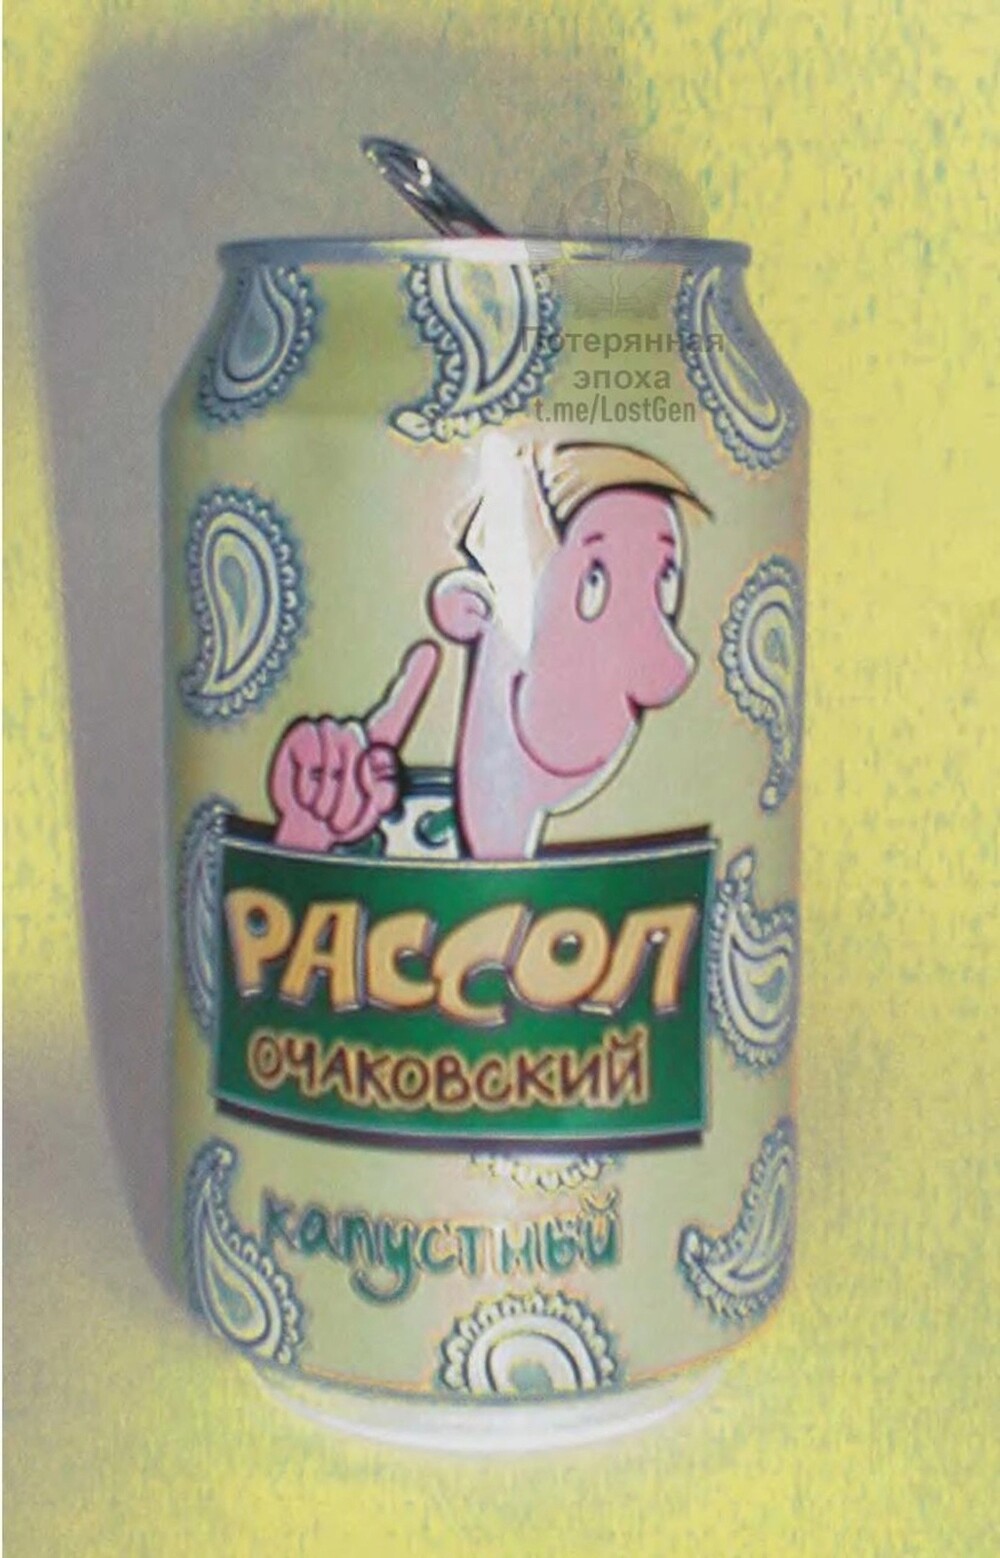 В 2000 году на заводе Очаково производили такой продукт - Рассол "Очаковский" капустный))